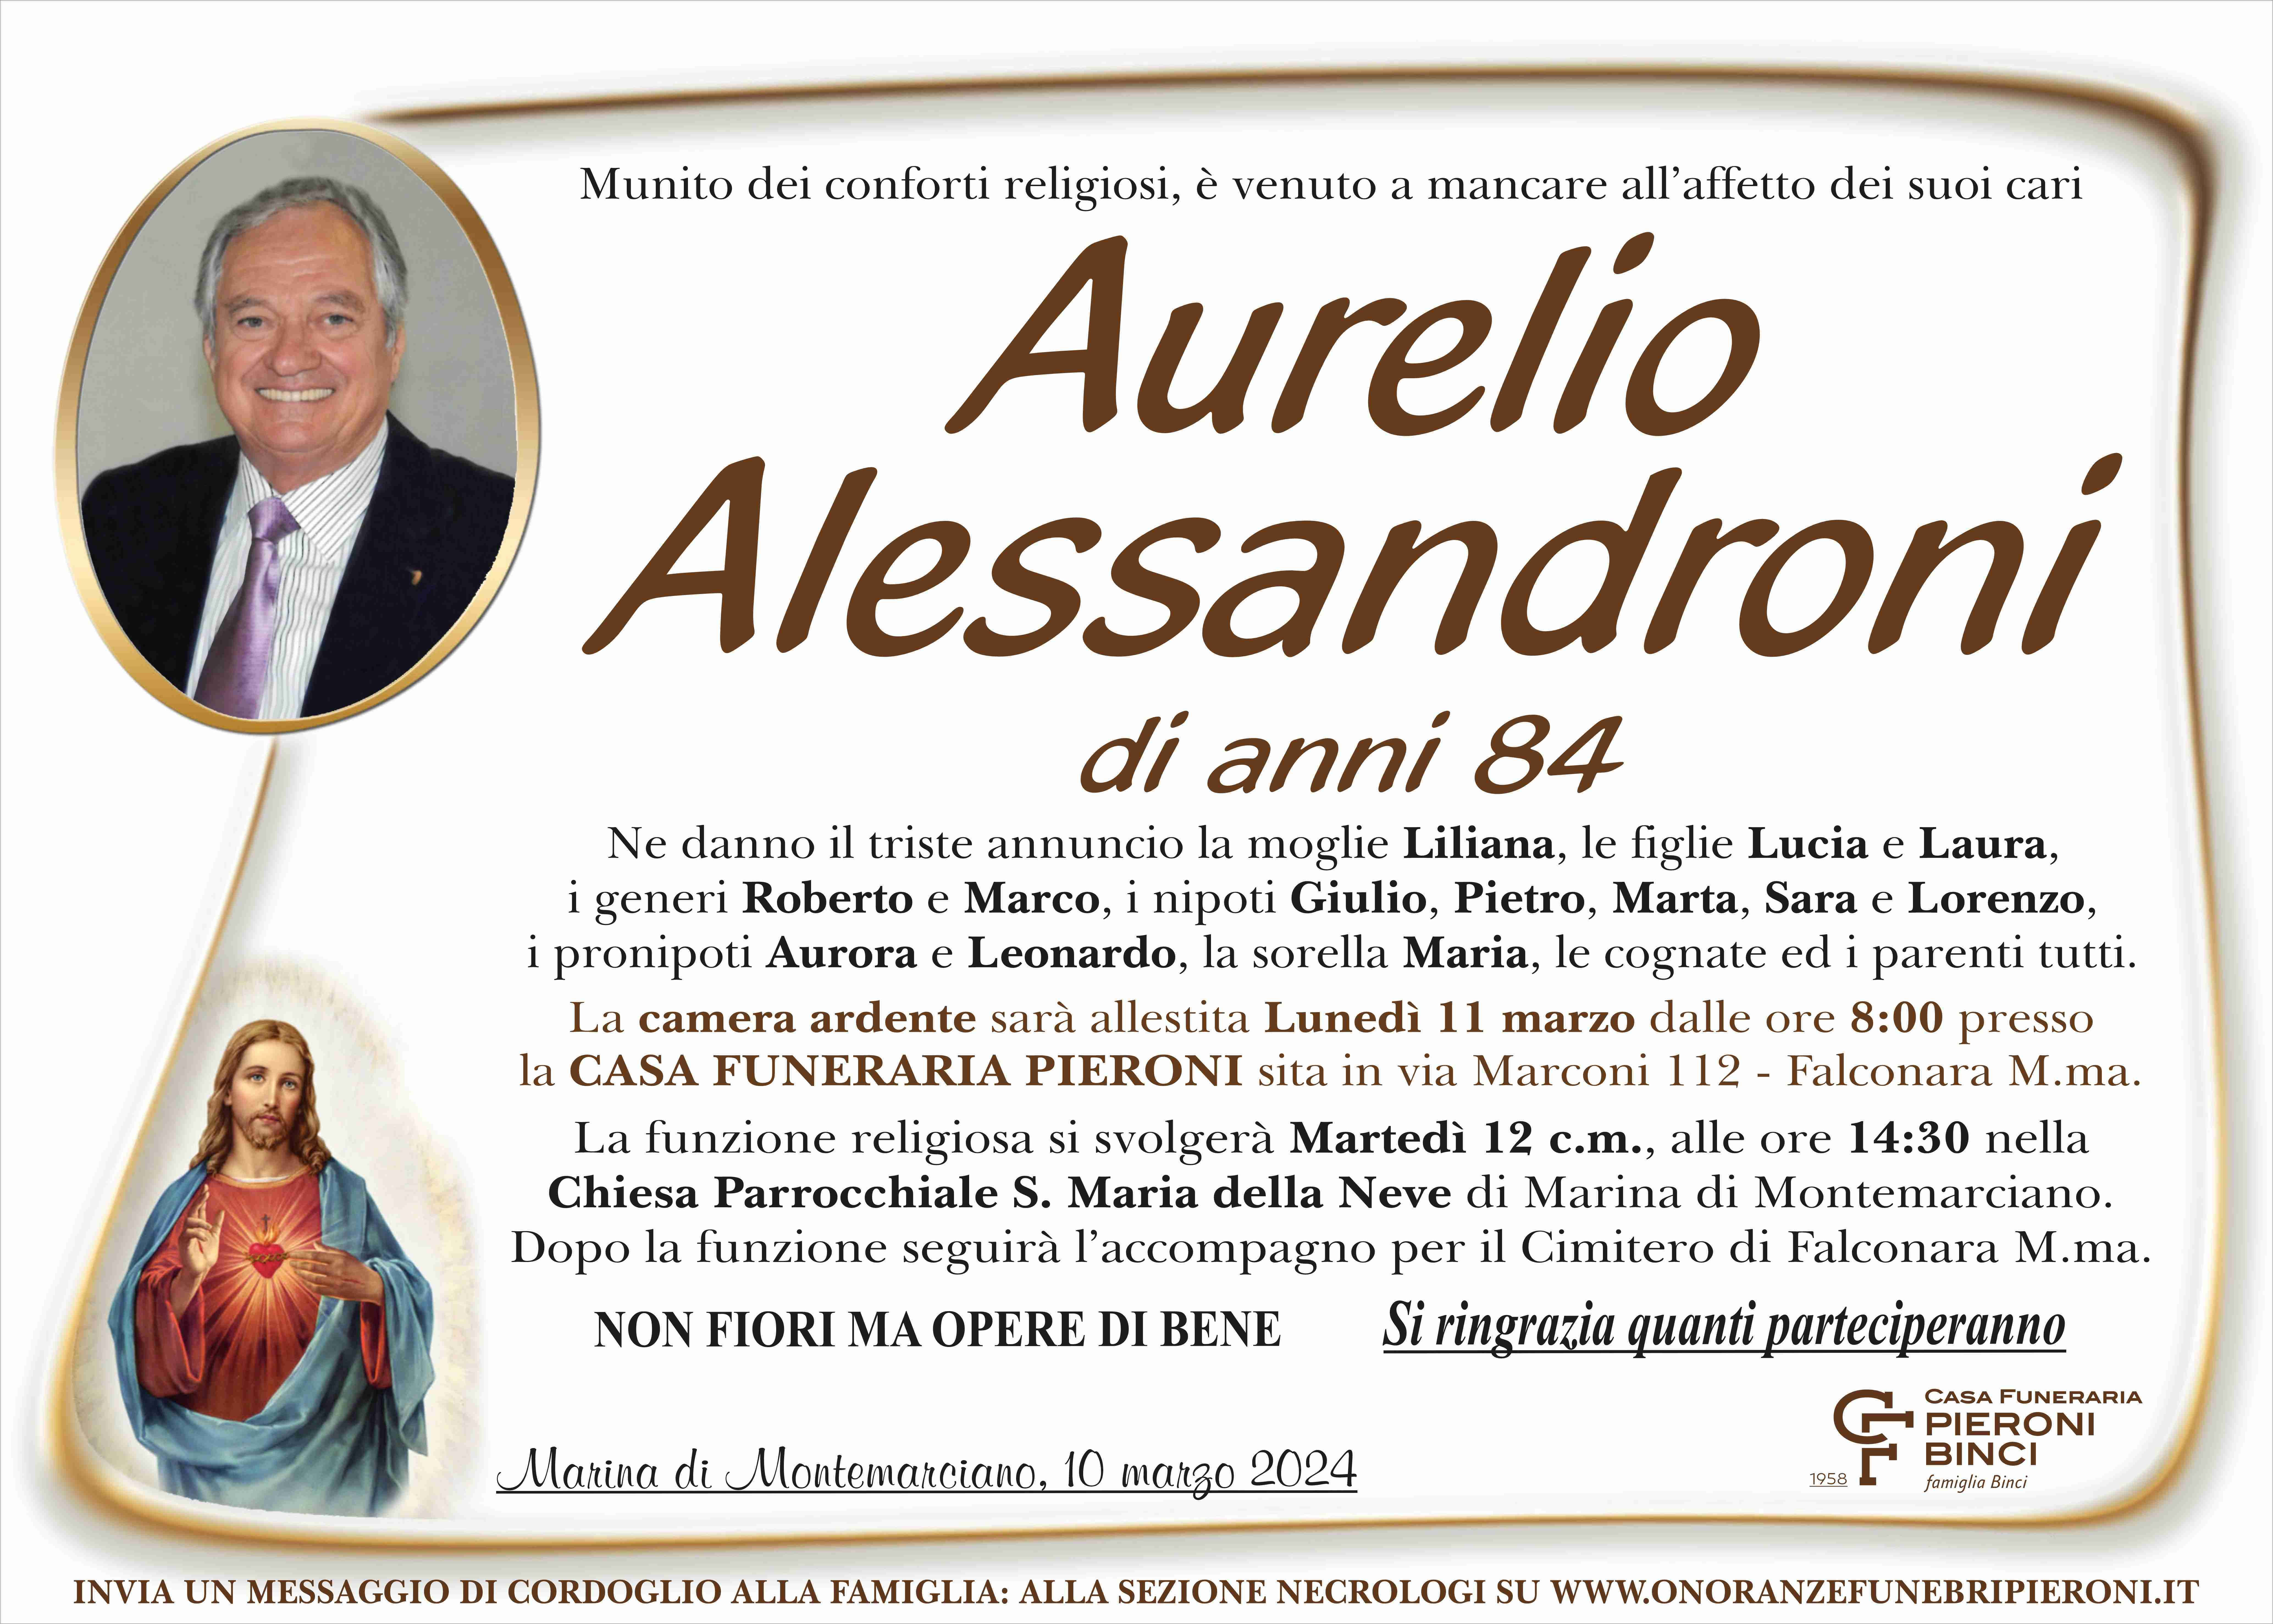 Aurelio Alessandroni